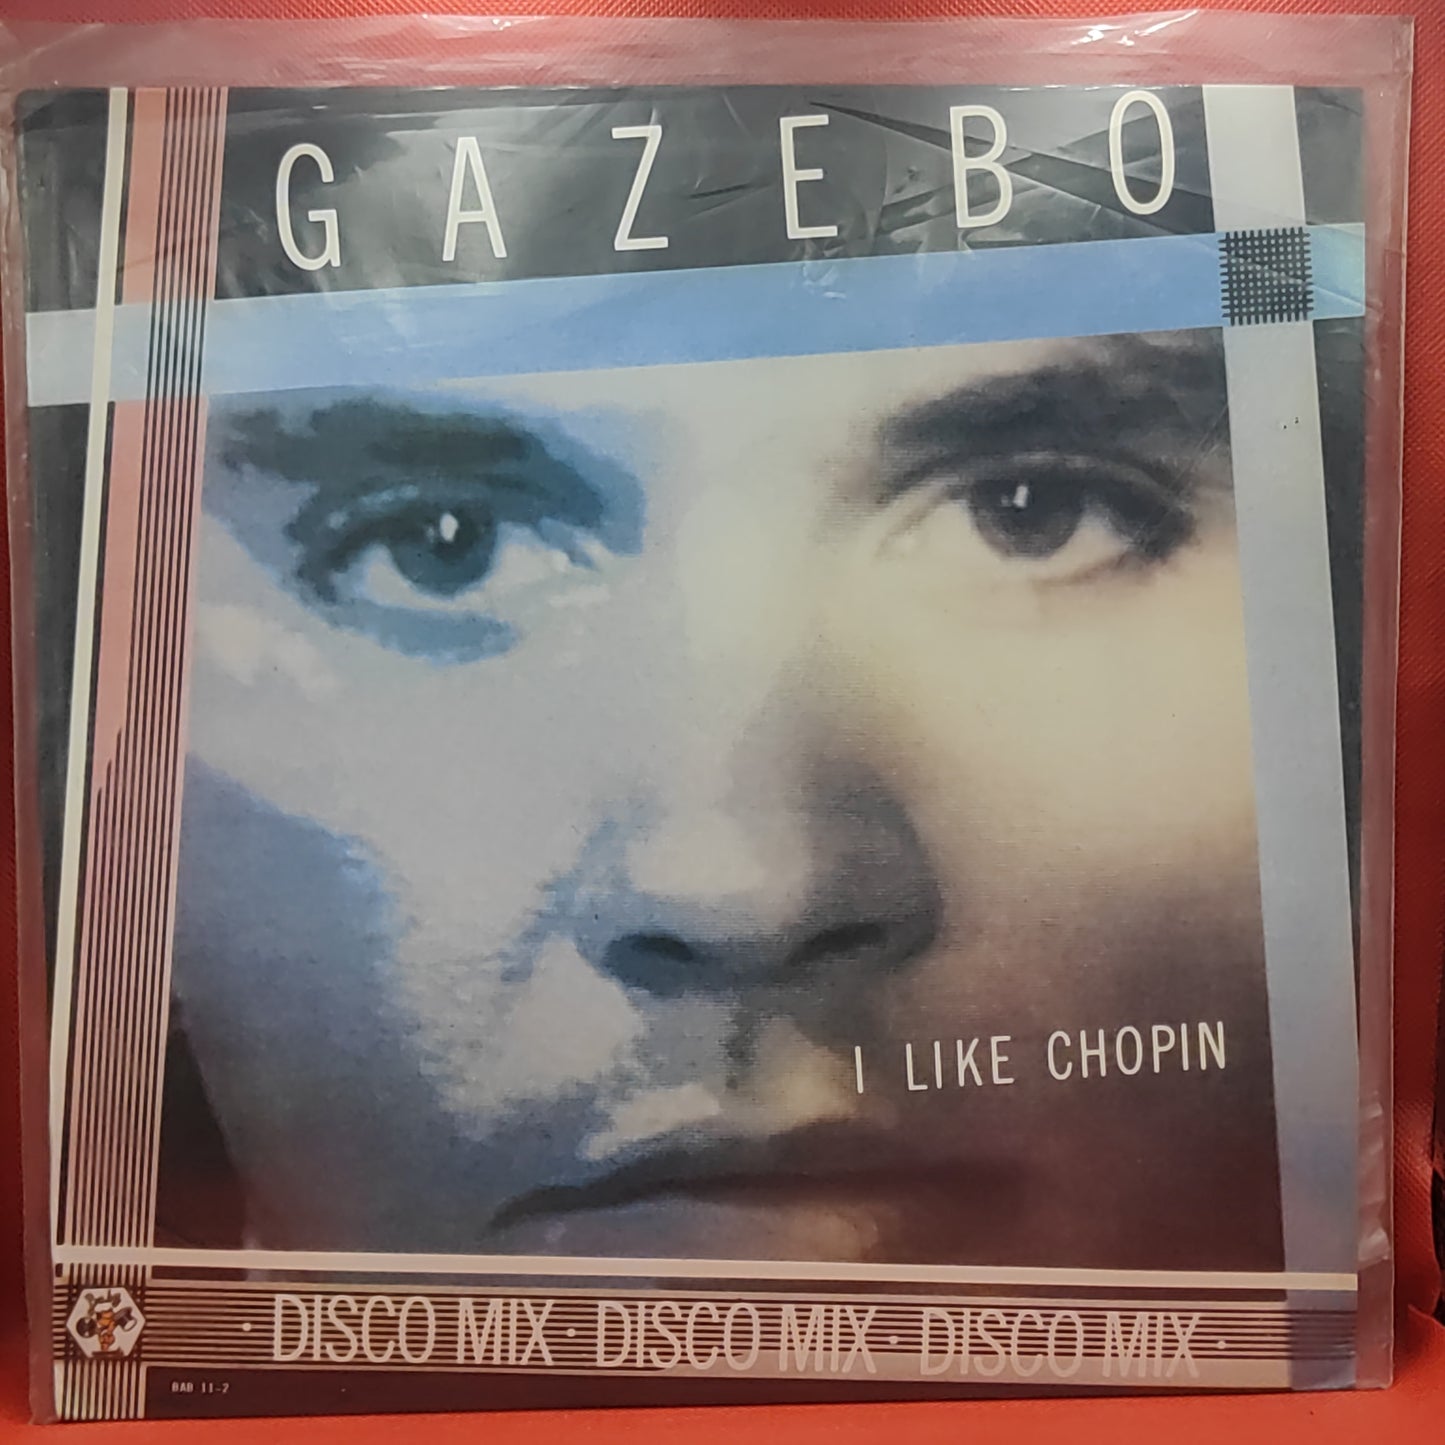 Gazebo – I Like Chopin (Disco Mix)